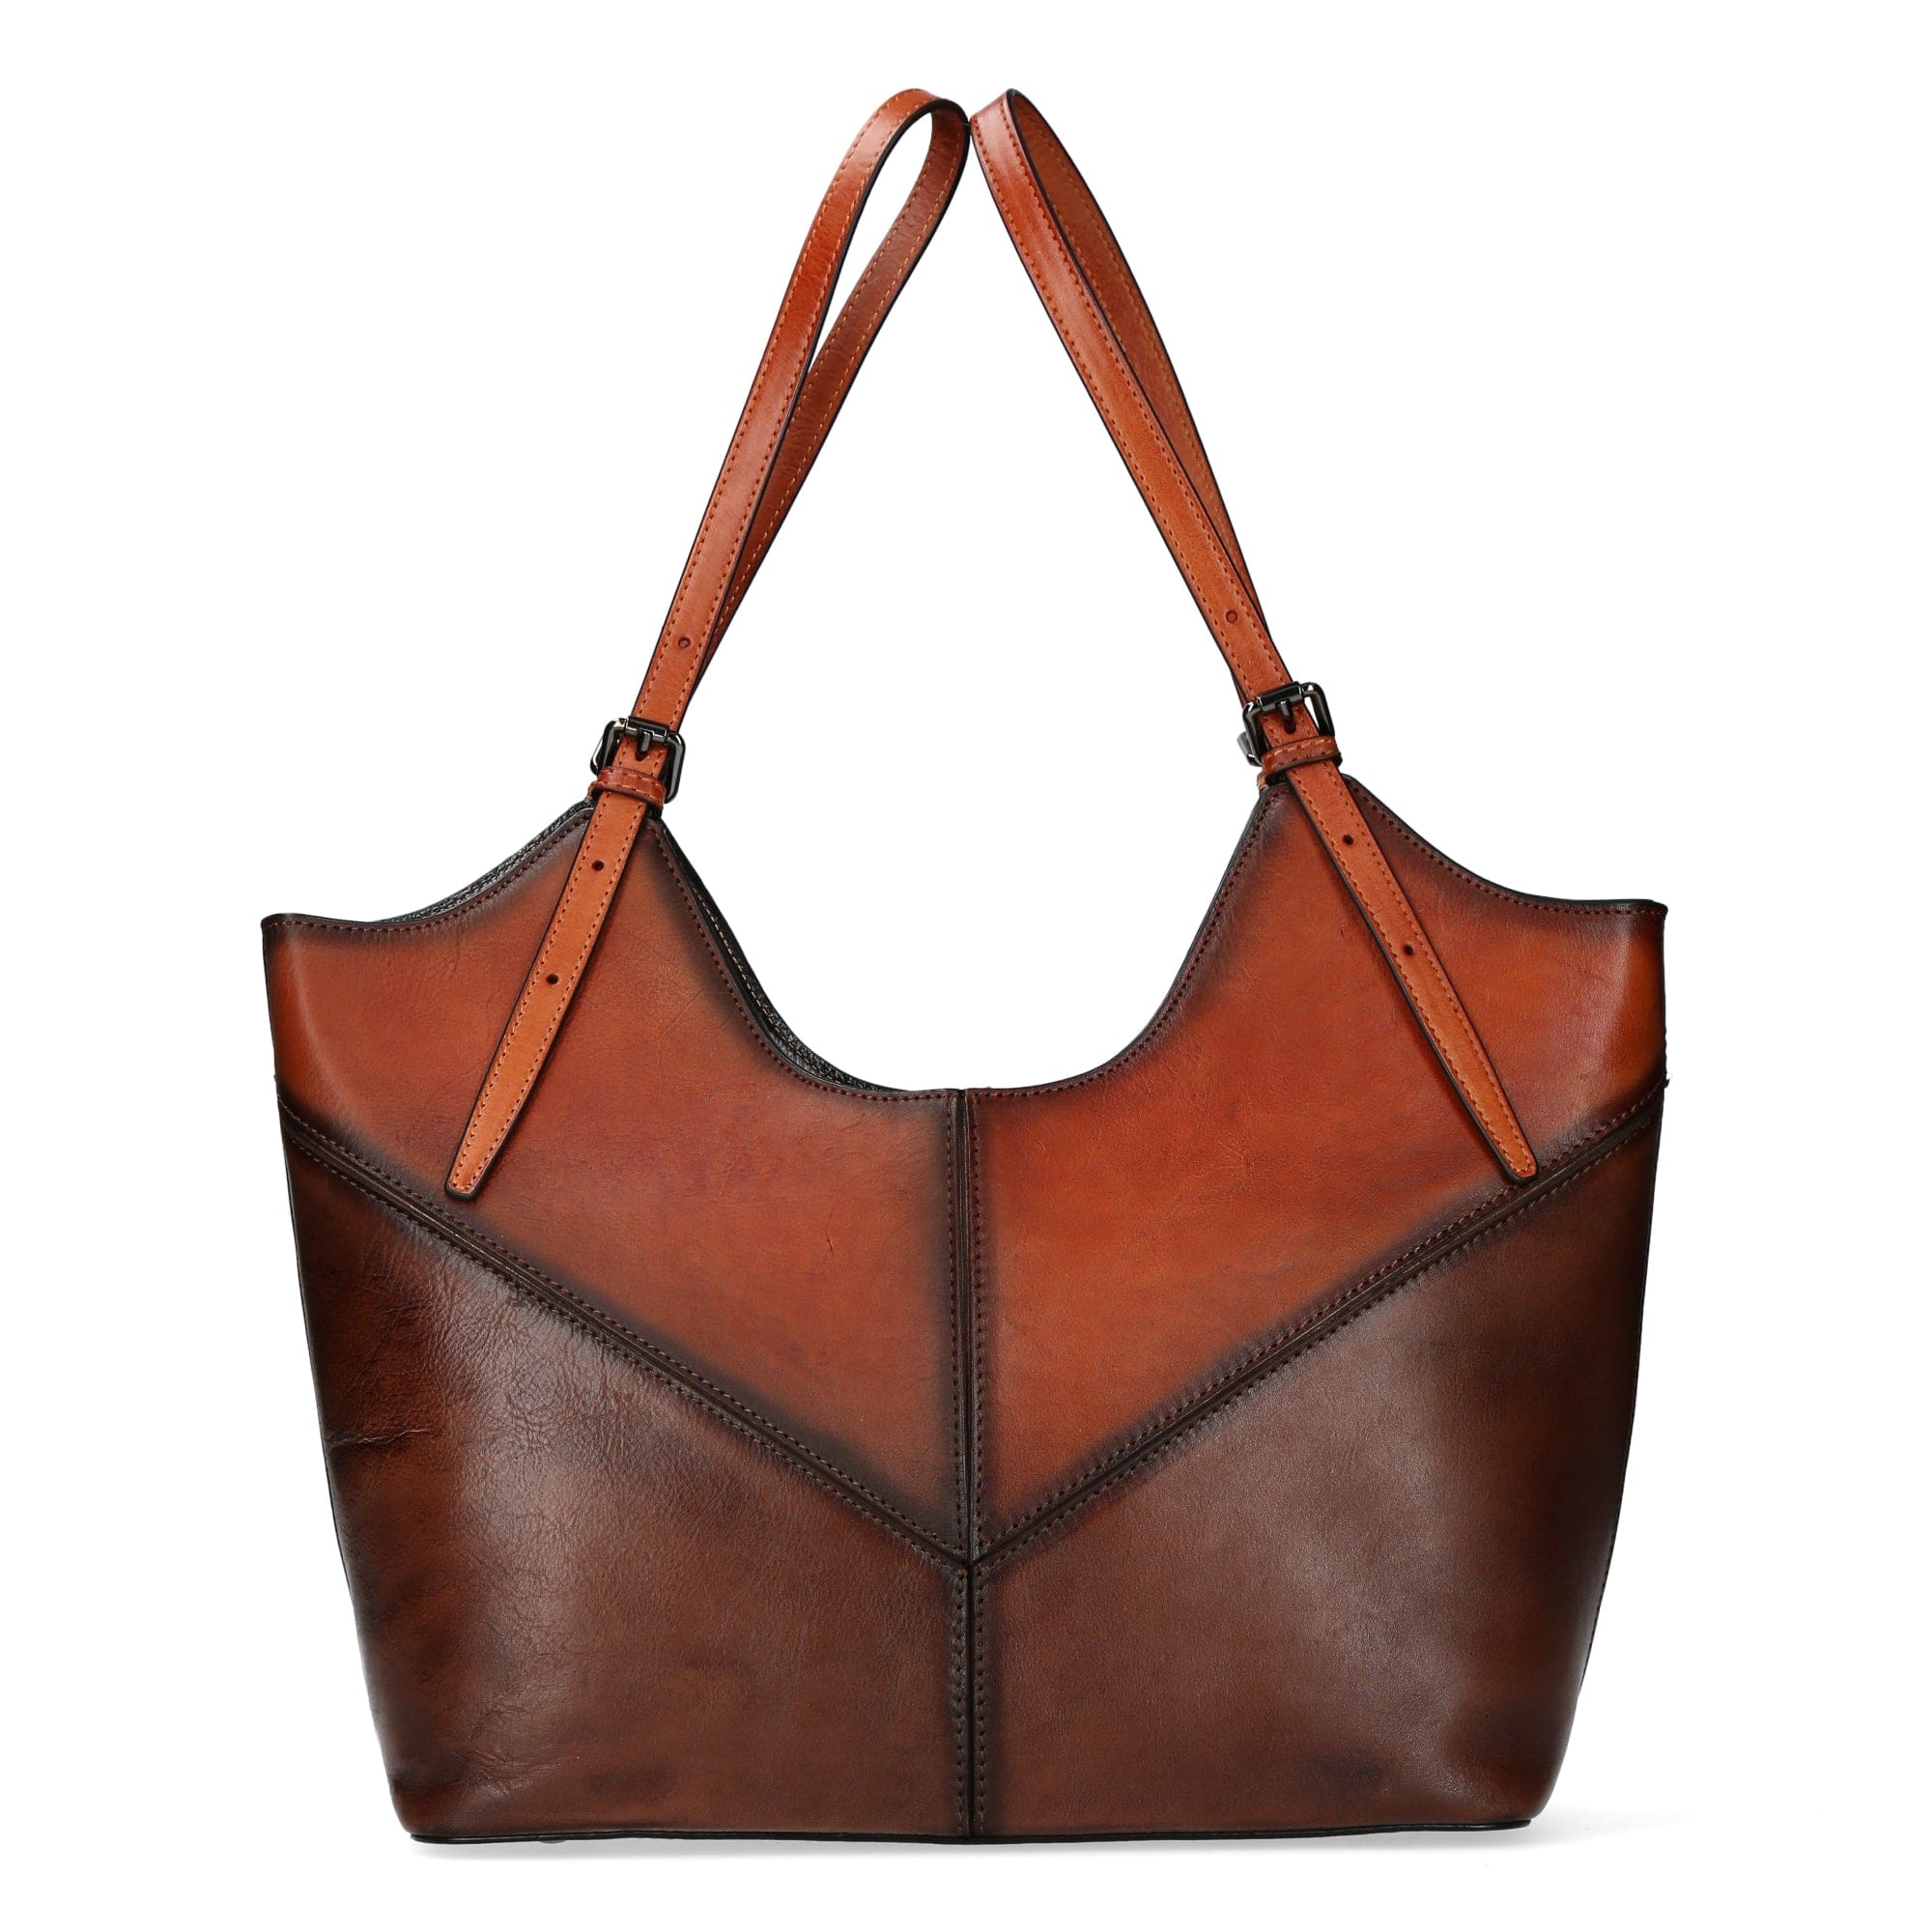 Alisier leather bag - Brown - Bag